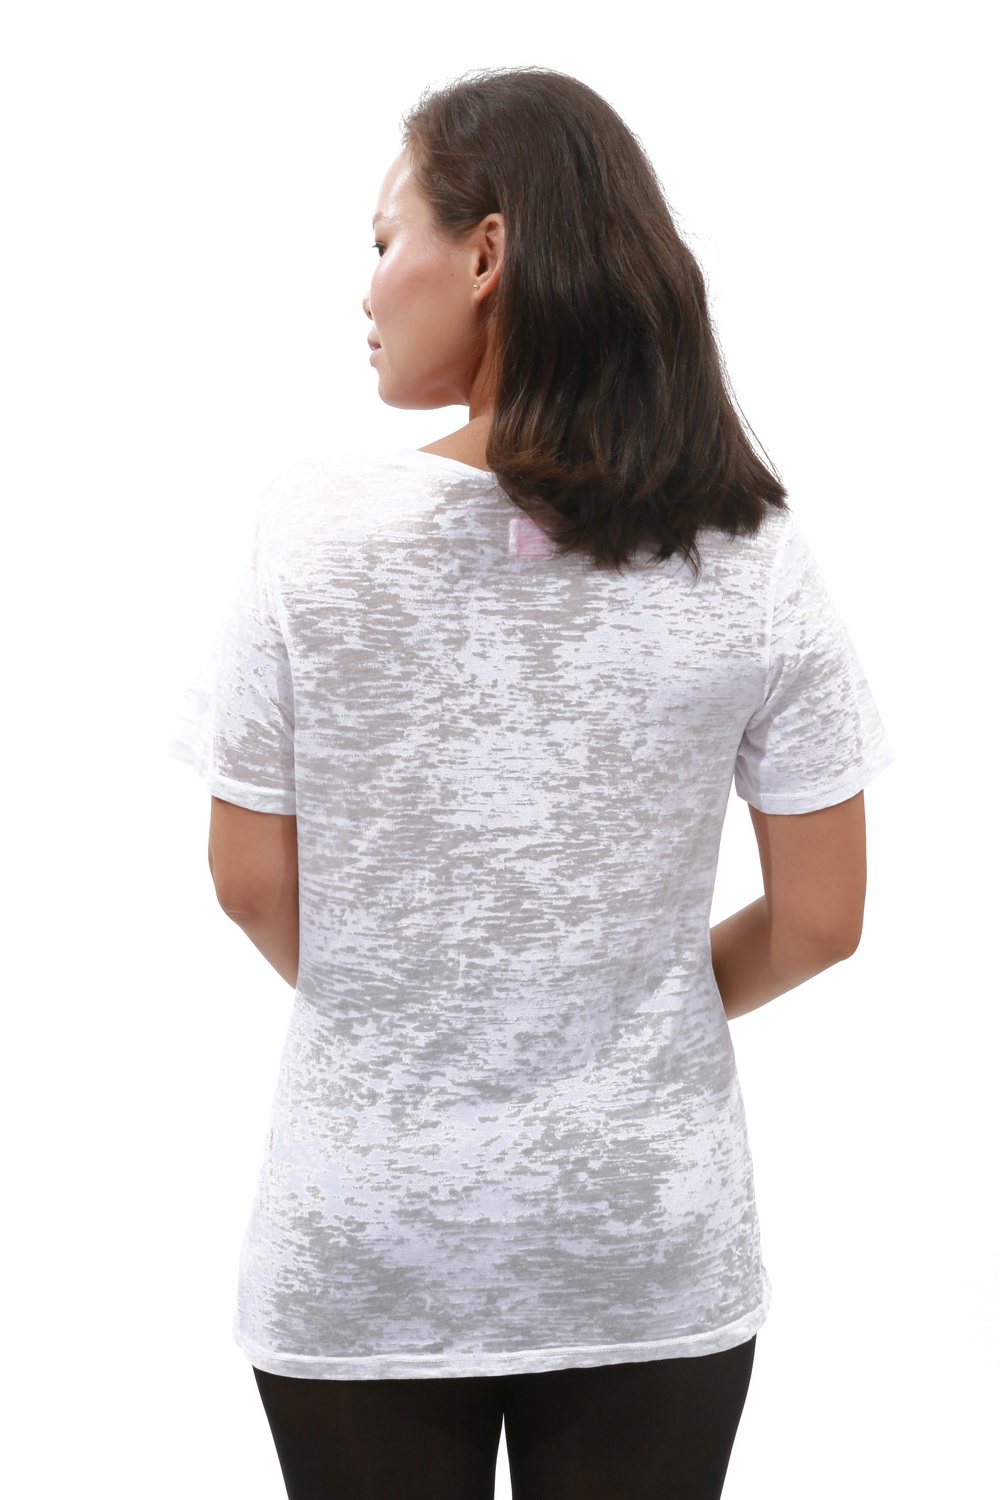 E.vil Womens Cotton Burnout T-Shirt "Surf Monster Gold Foil" White